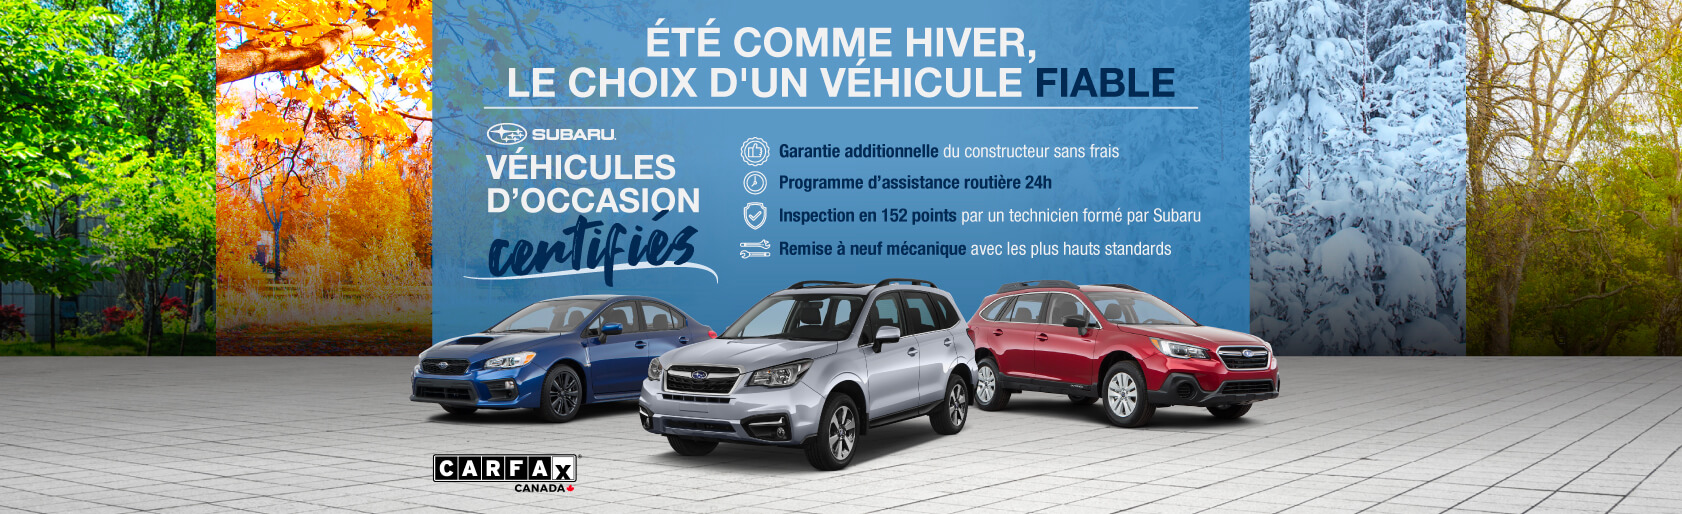 Véhicule d'Occasion Certifié Subaru à Québec - Desjardins Subaru